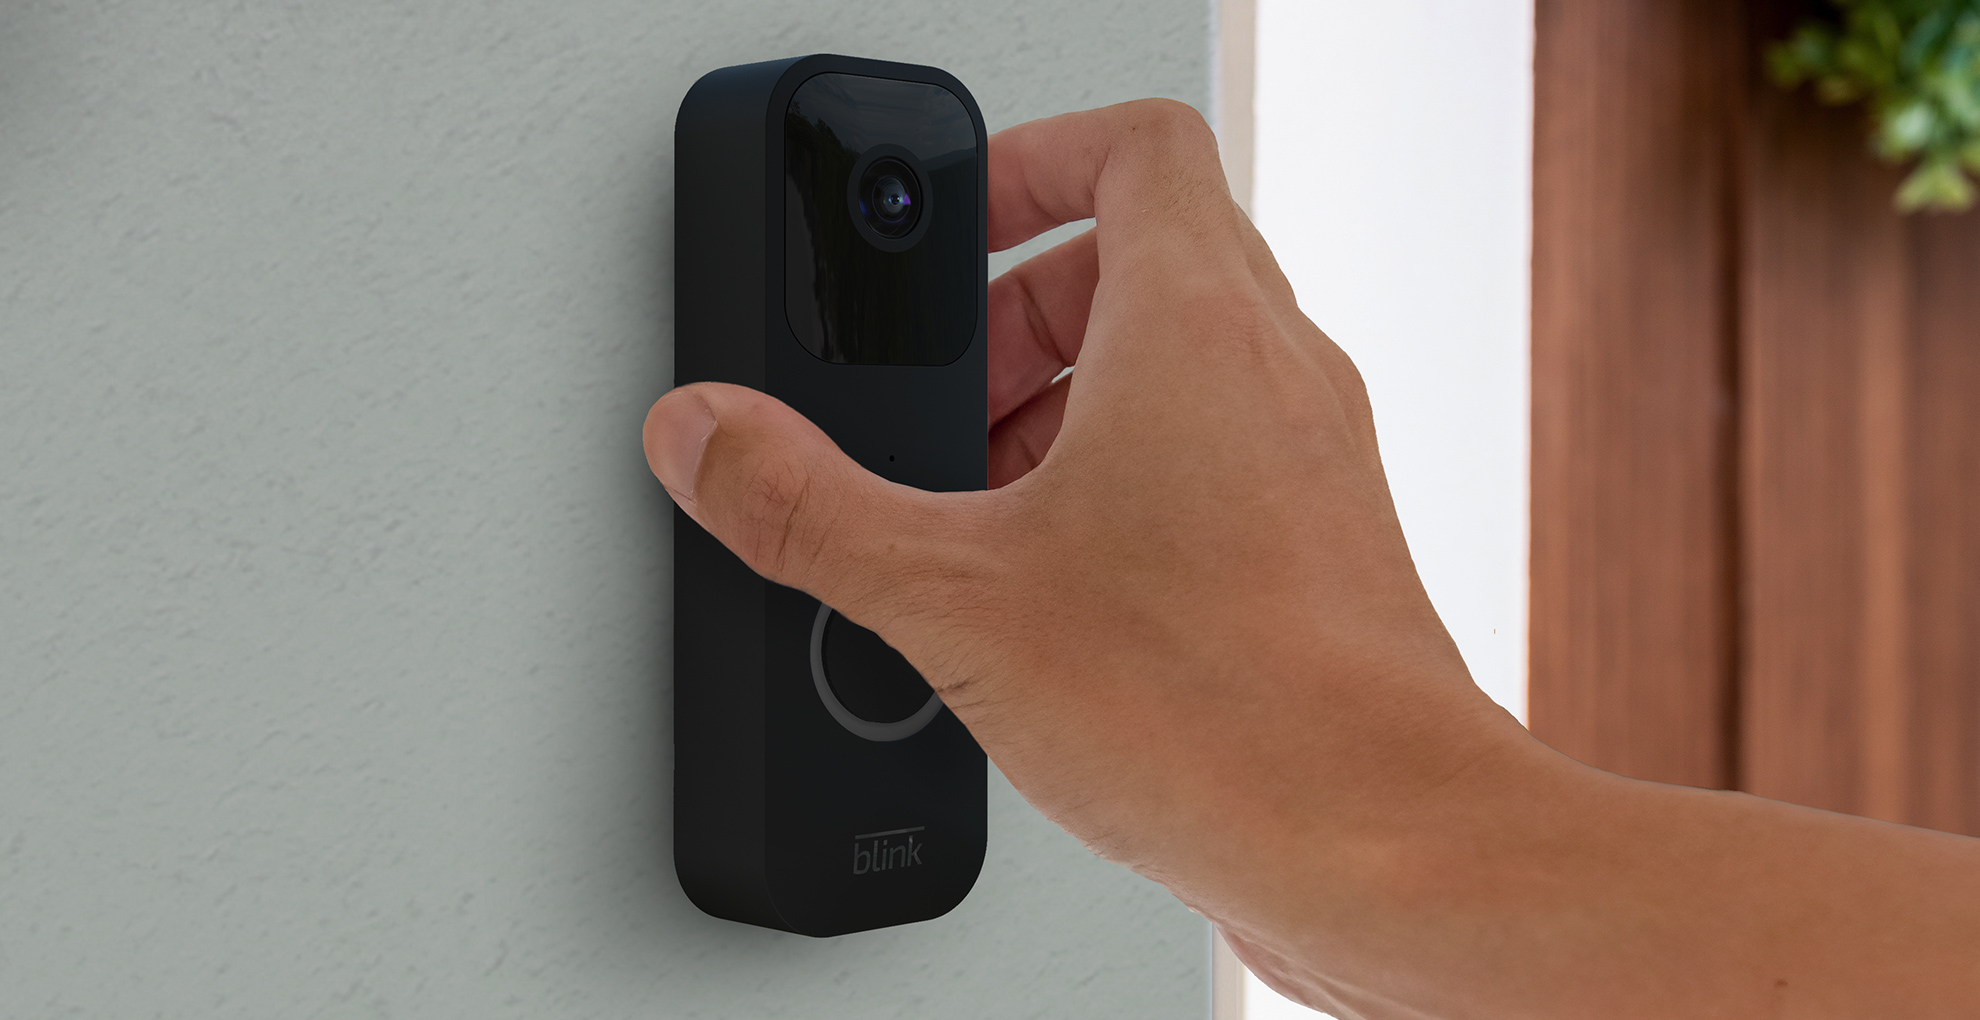 Amazon Blink outdoor camera doorbell